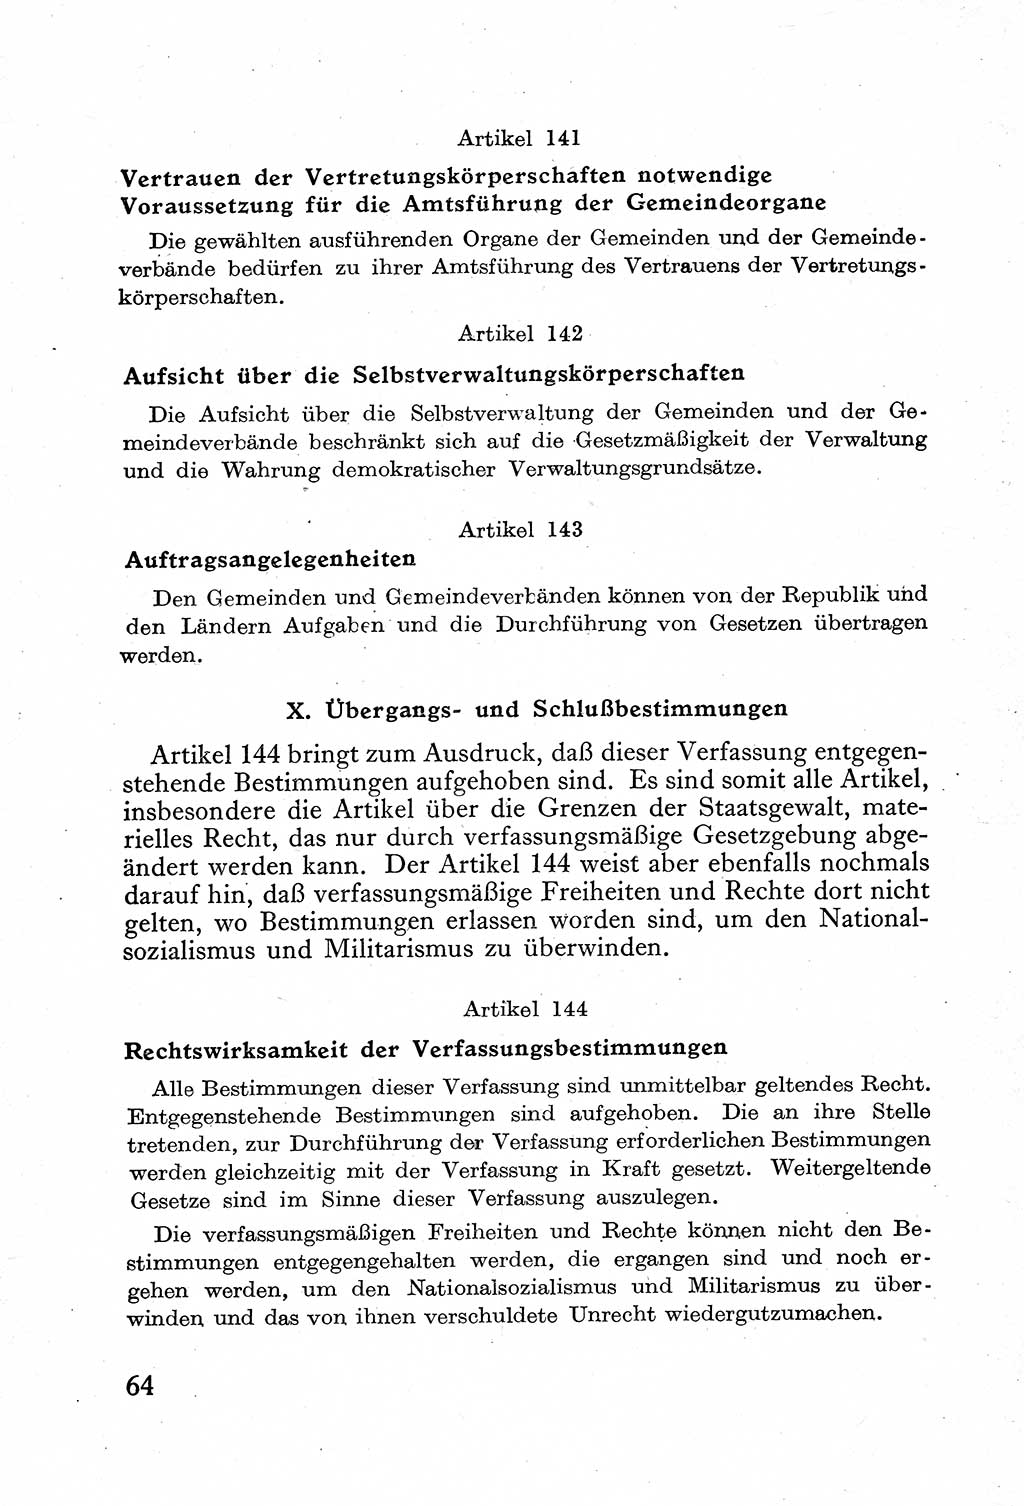 Verfassung der Deutschen Demokratischen Republik (DDR) mit einer Einleitung von Karl Steinhoff 1949, Seite 64 (Verf. DDR Einl. K. S. 1949, S. 64)